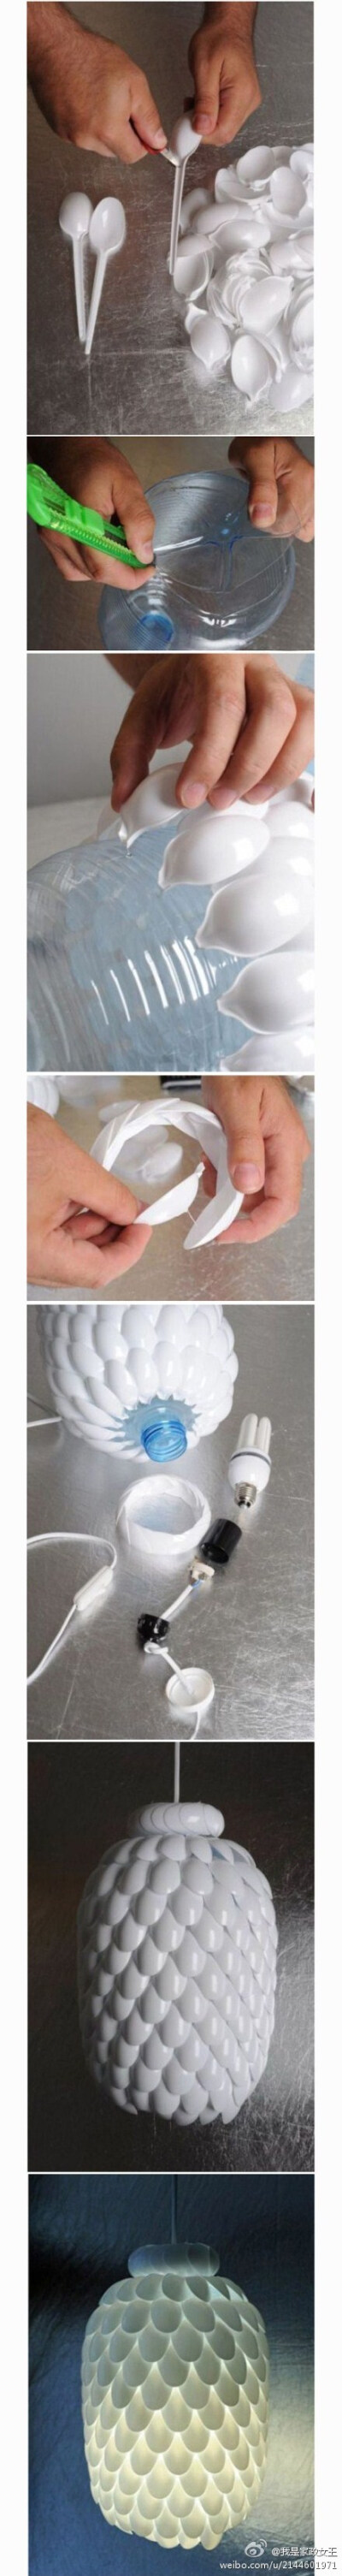 【DIY一个漂亮的吊灯~】用1堆白色塑料勺子+1个大号矿泉水瓶+白炽灯泡+带线开关等材料制作的吊灯